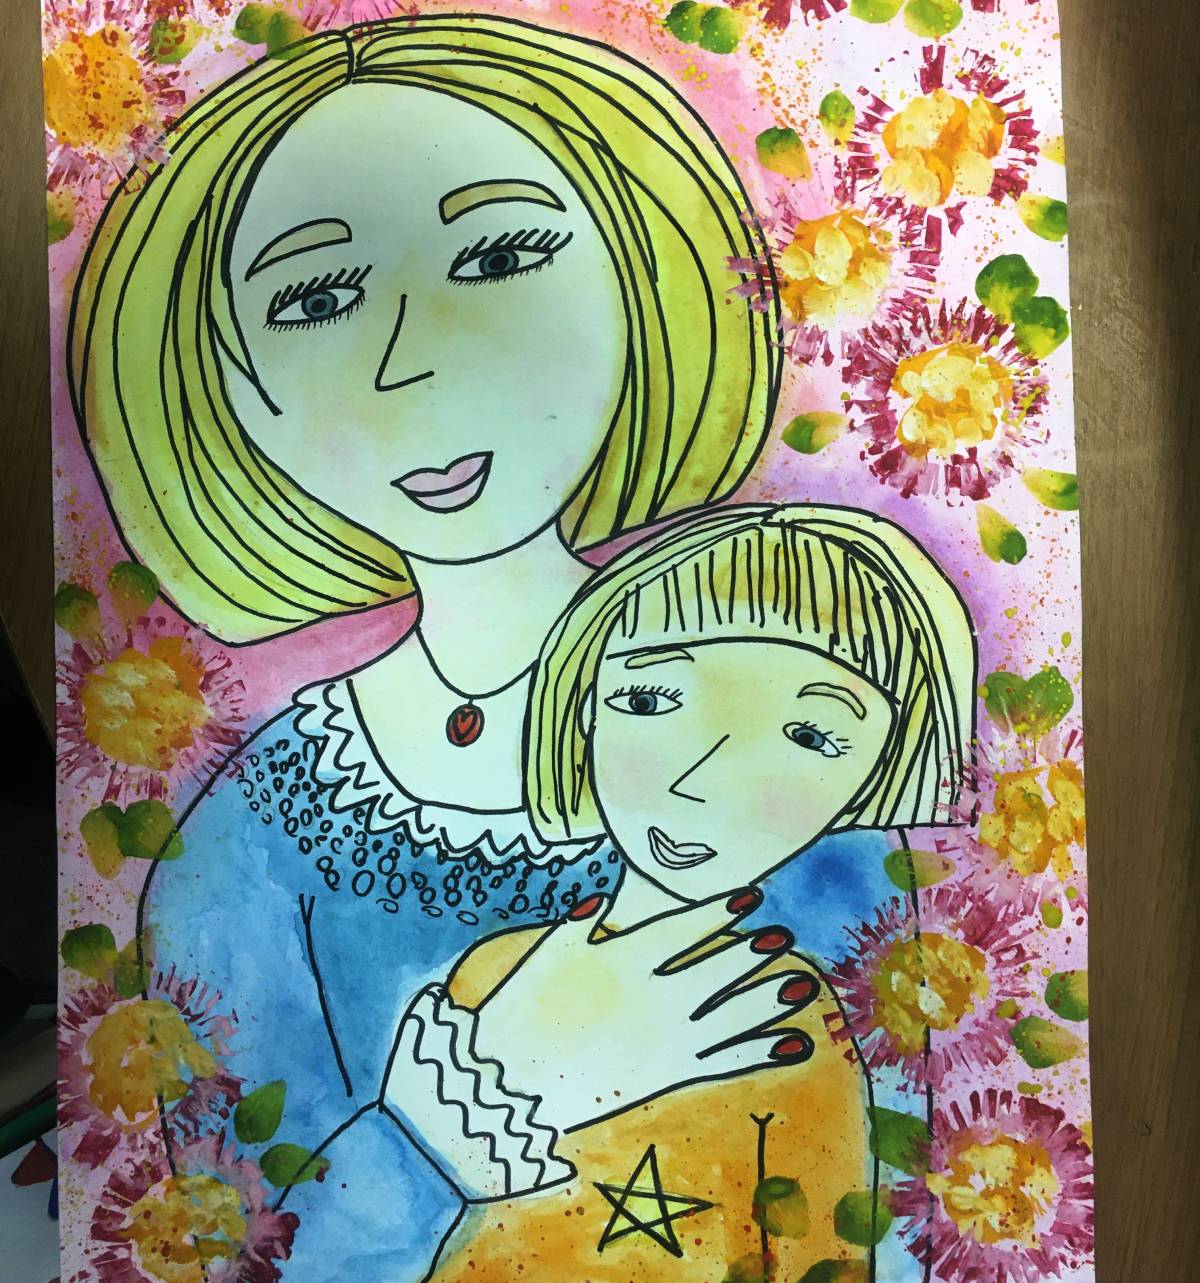 Рисунки детей из территорий края будут изображены на партийныхпоздравительных открытках ко Дню матери